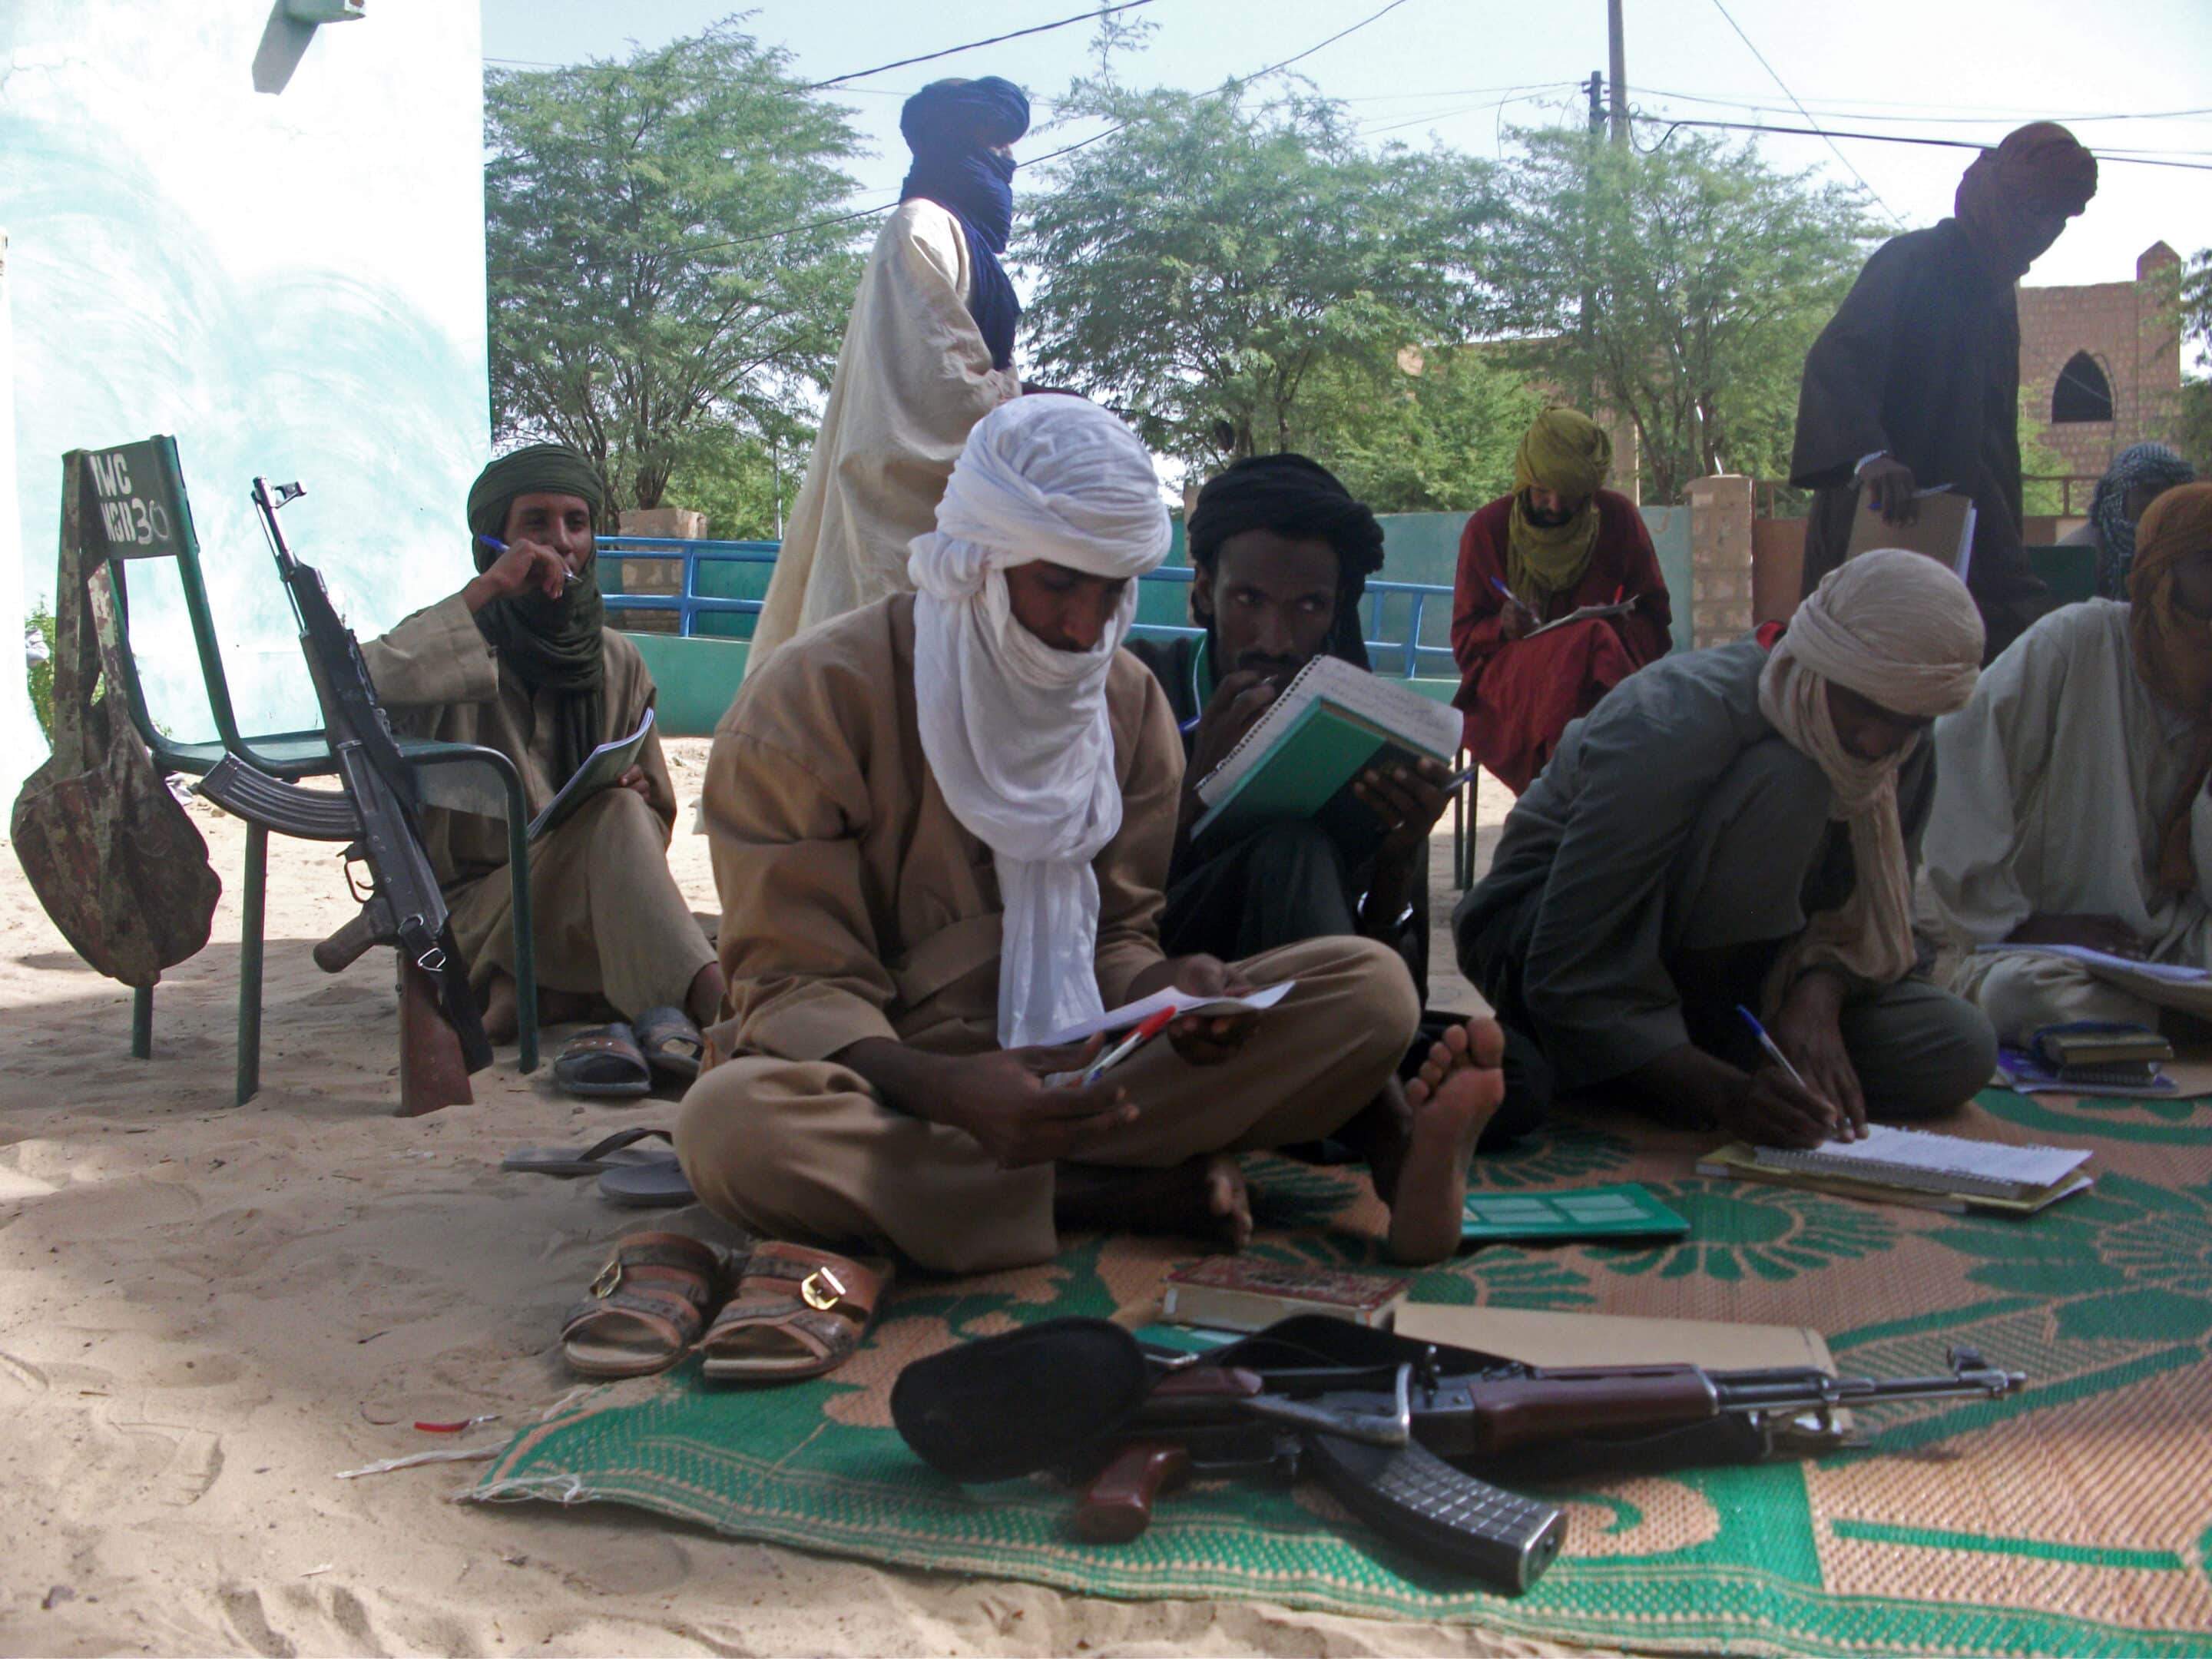 Des djihadistes à Tombouctou, dans le nord du Mali, en 2012.
Wiki commons